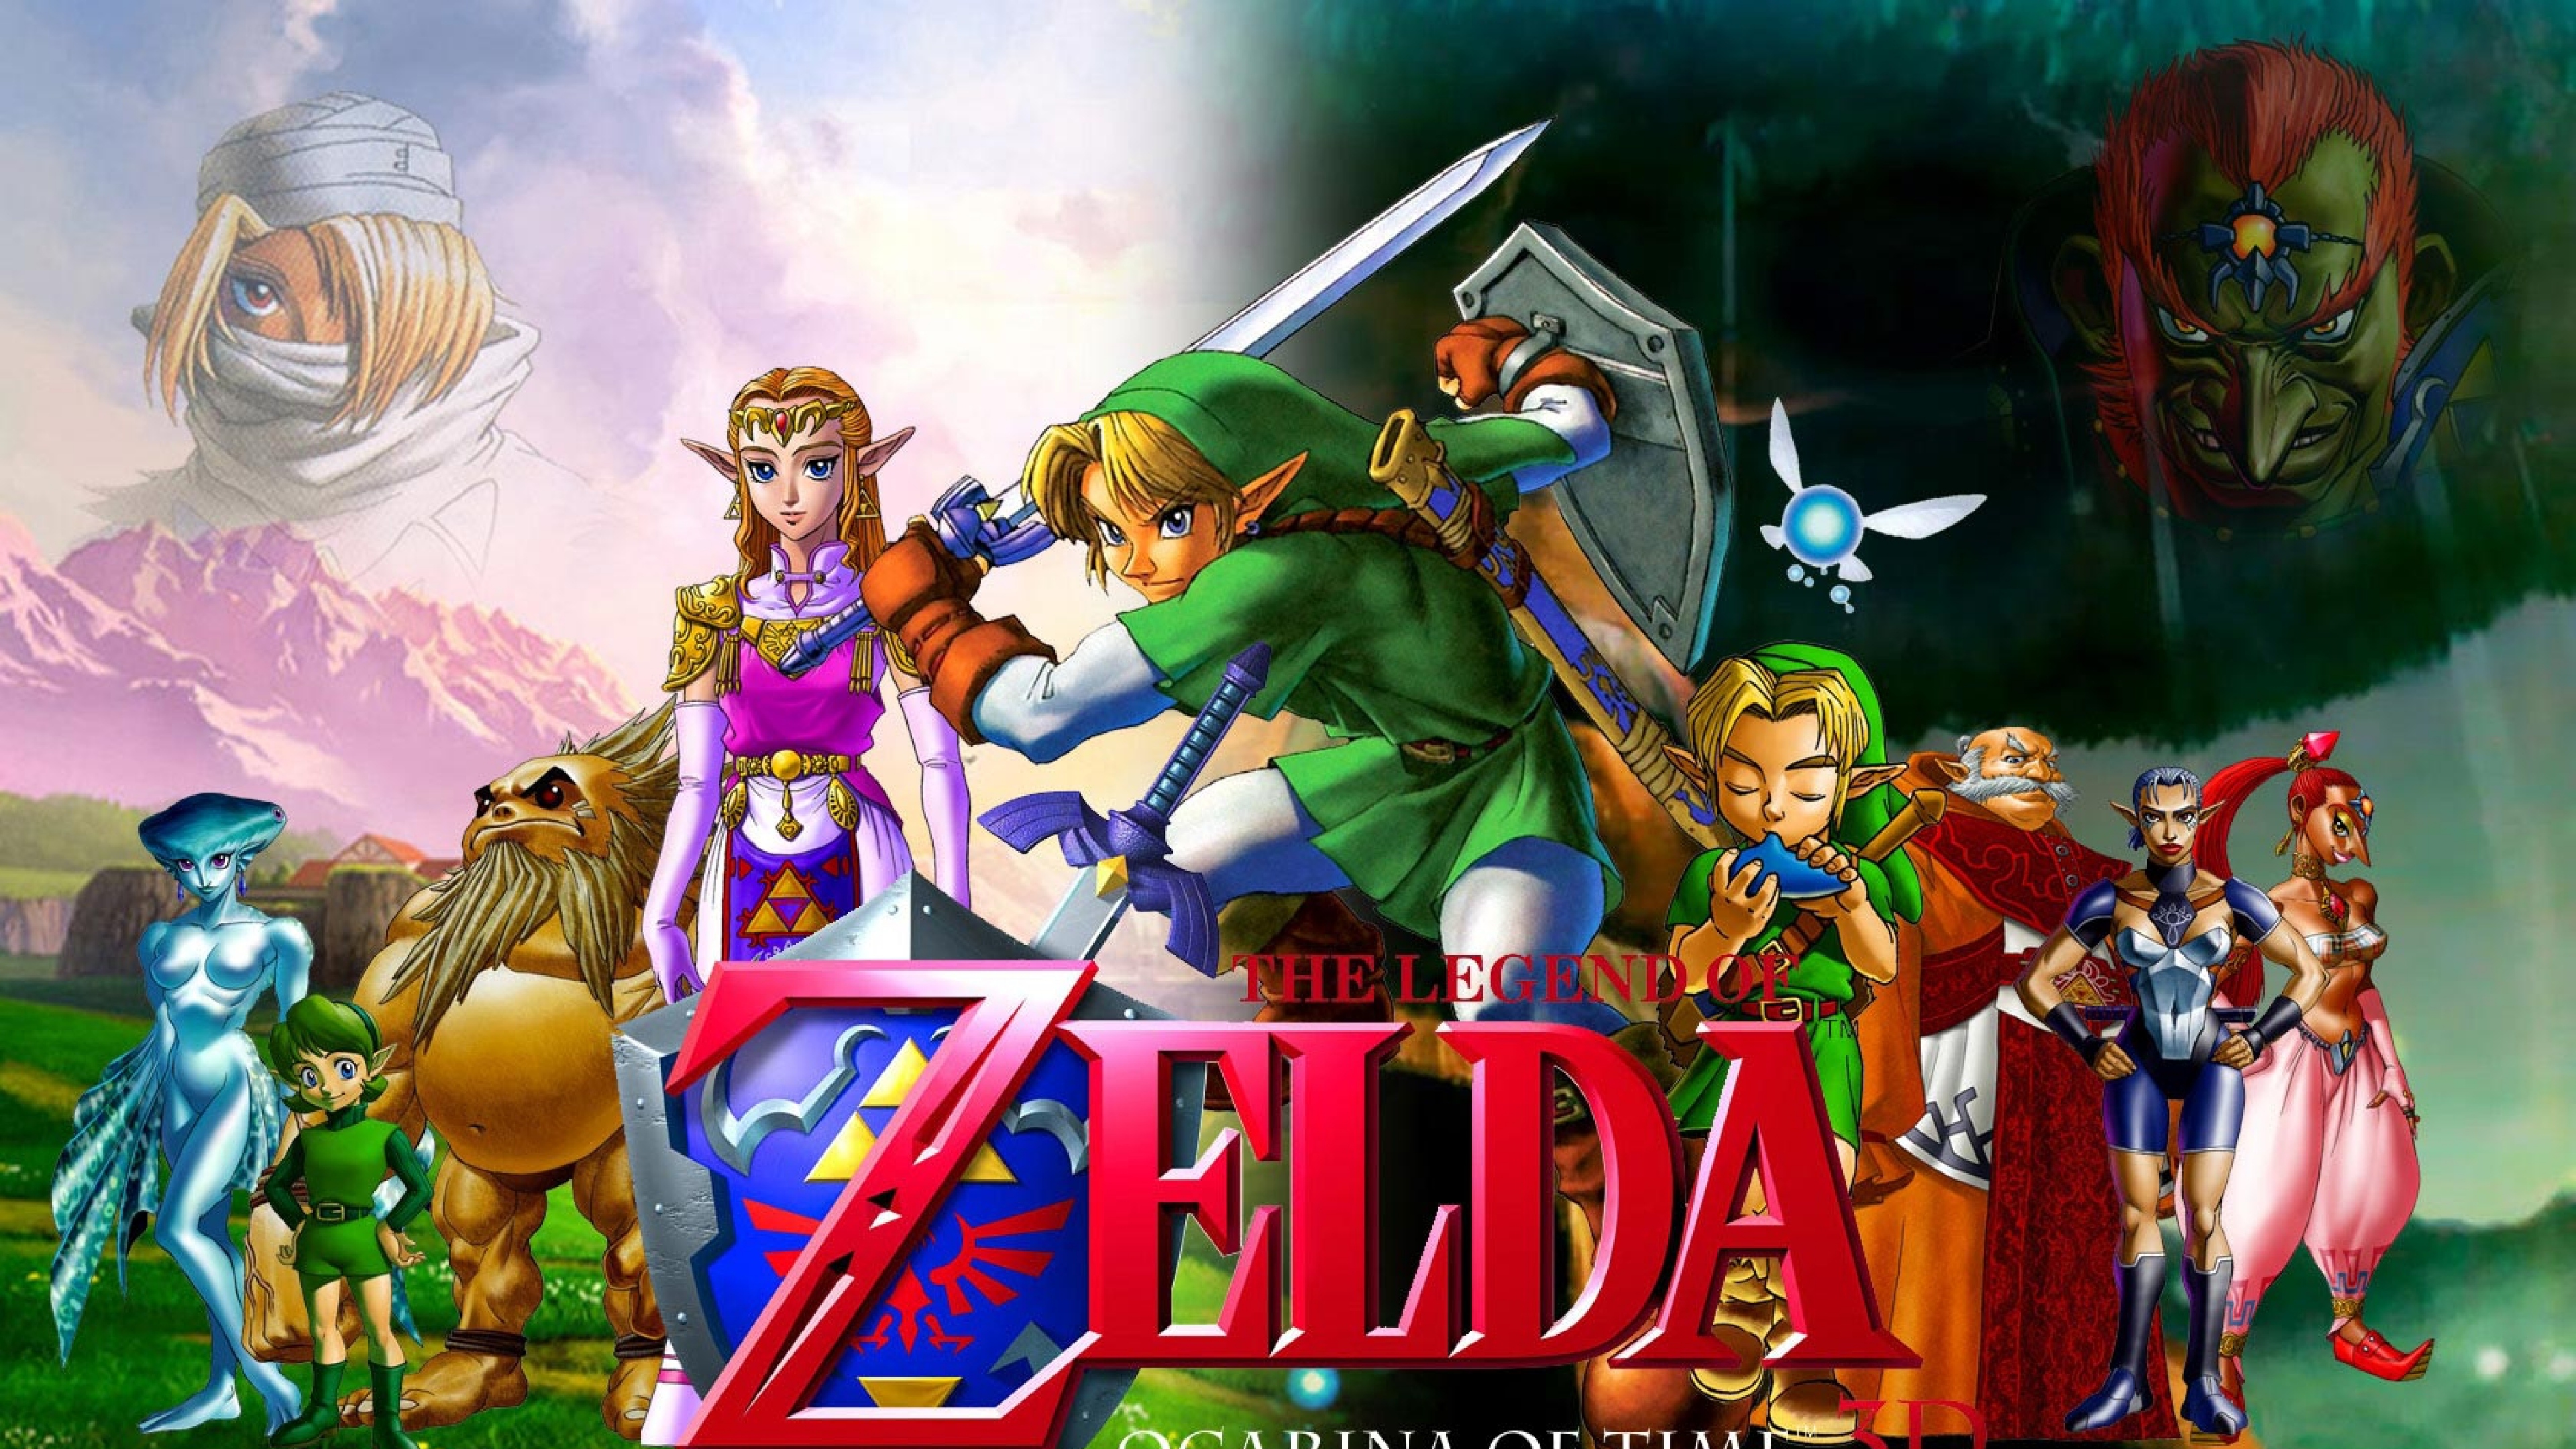 49+] Zelda 4K Wallpaper - WallpaperSafari